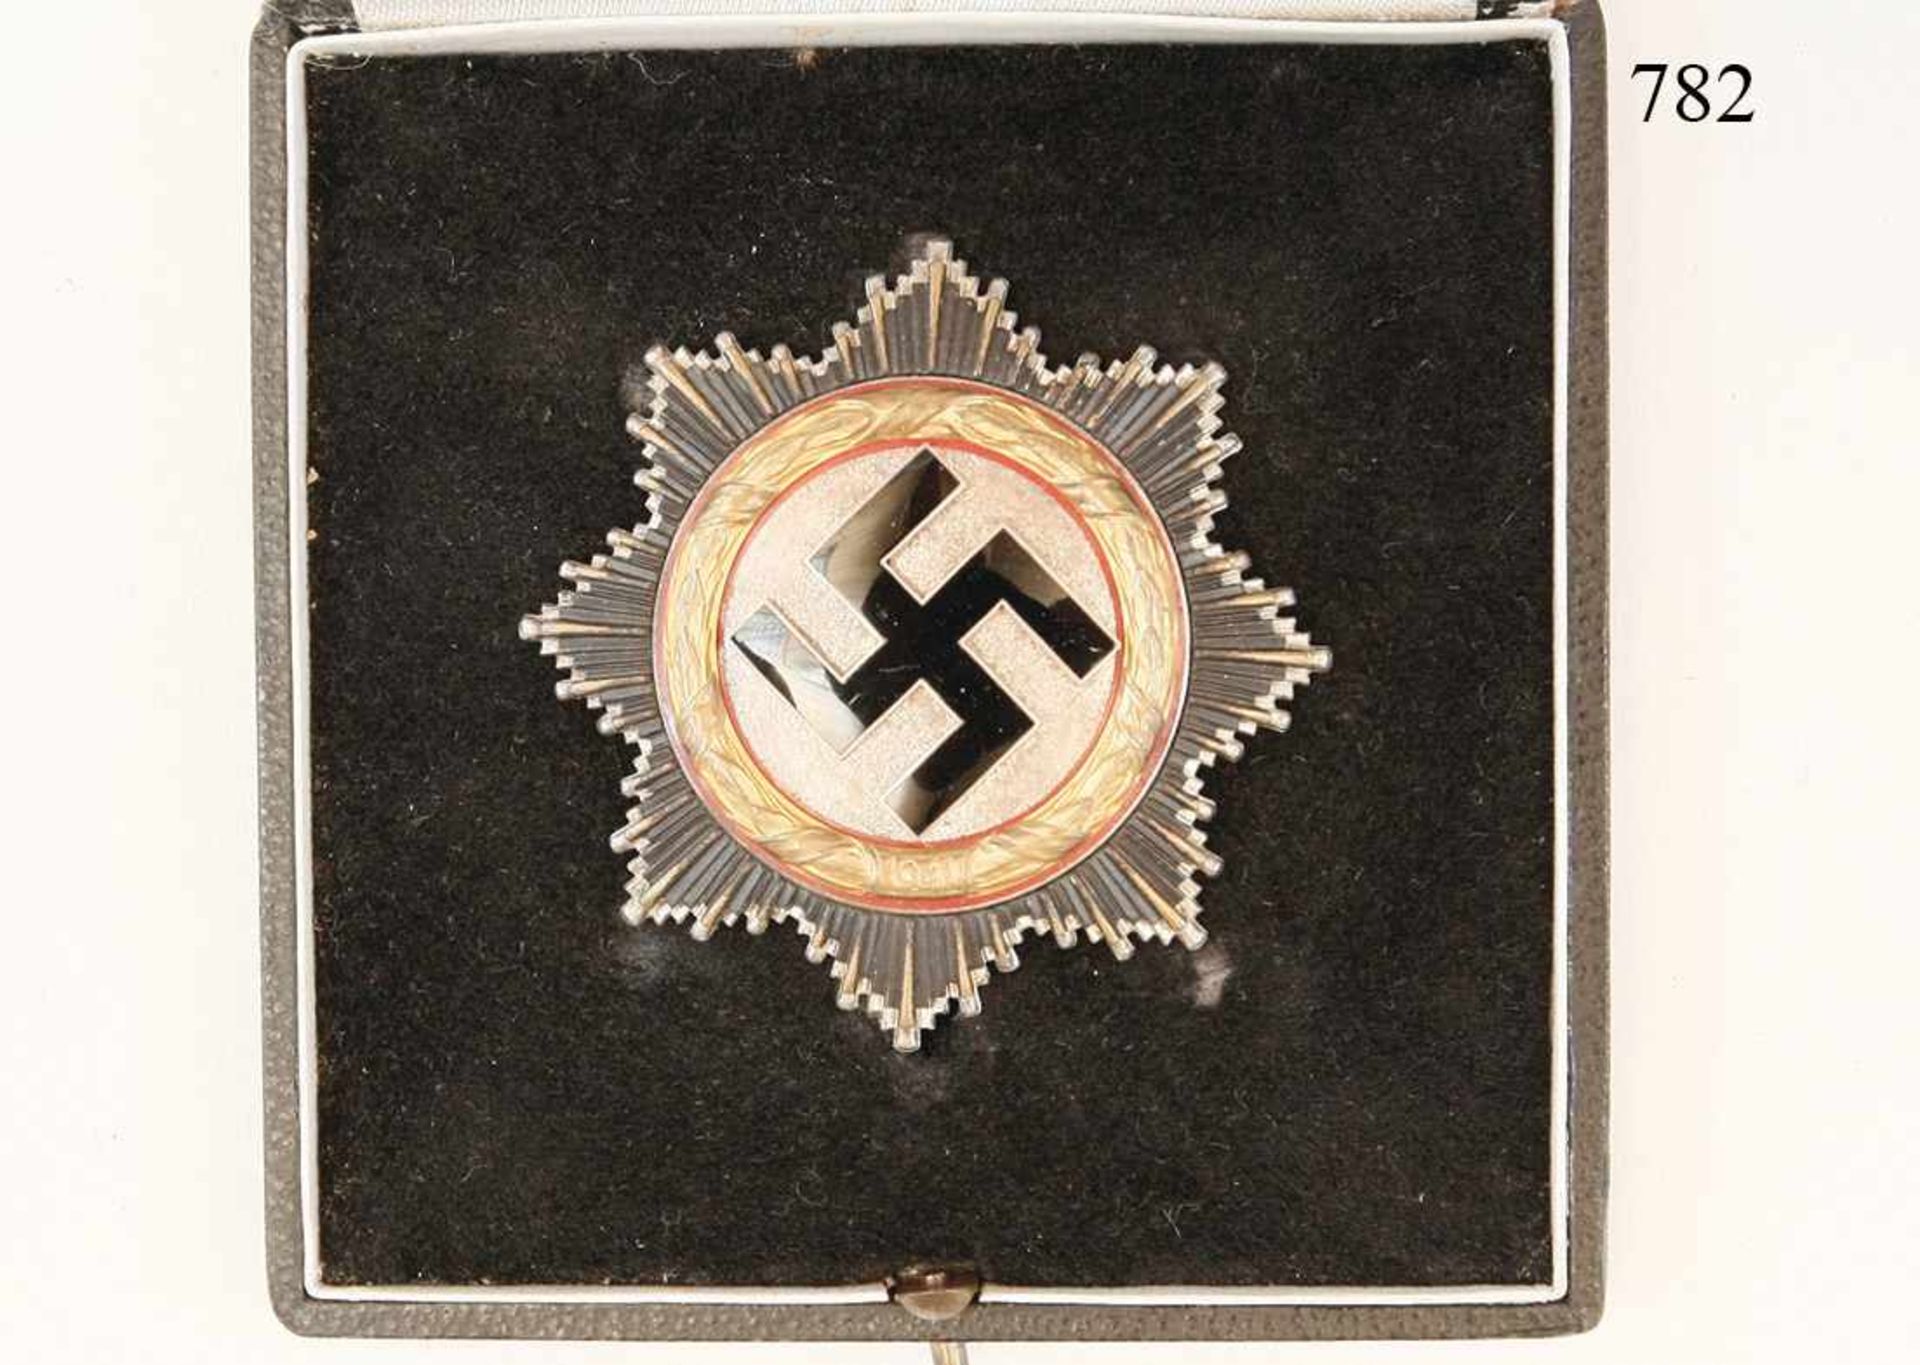 Deutsches Kreuz in Gold